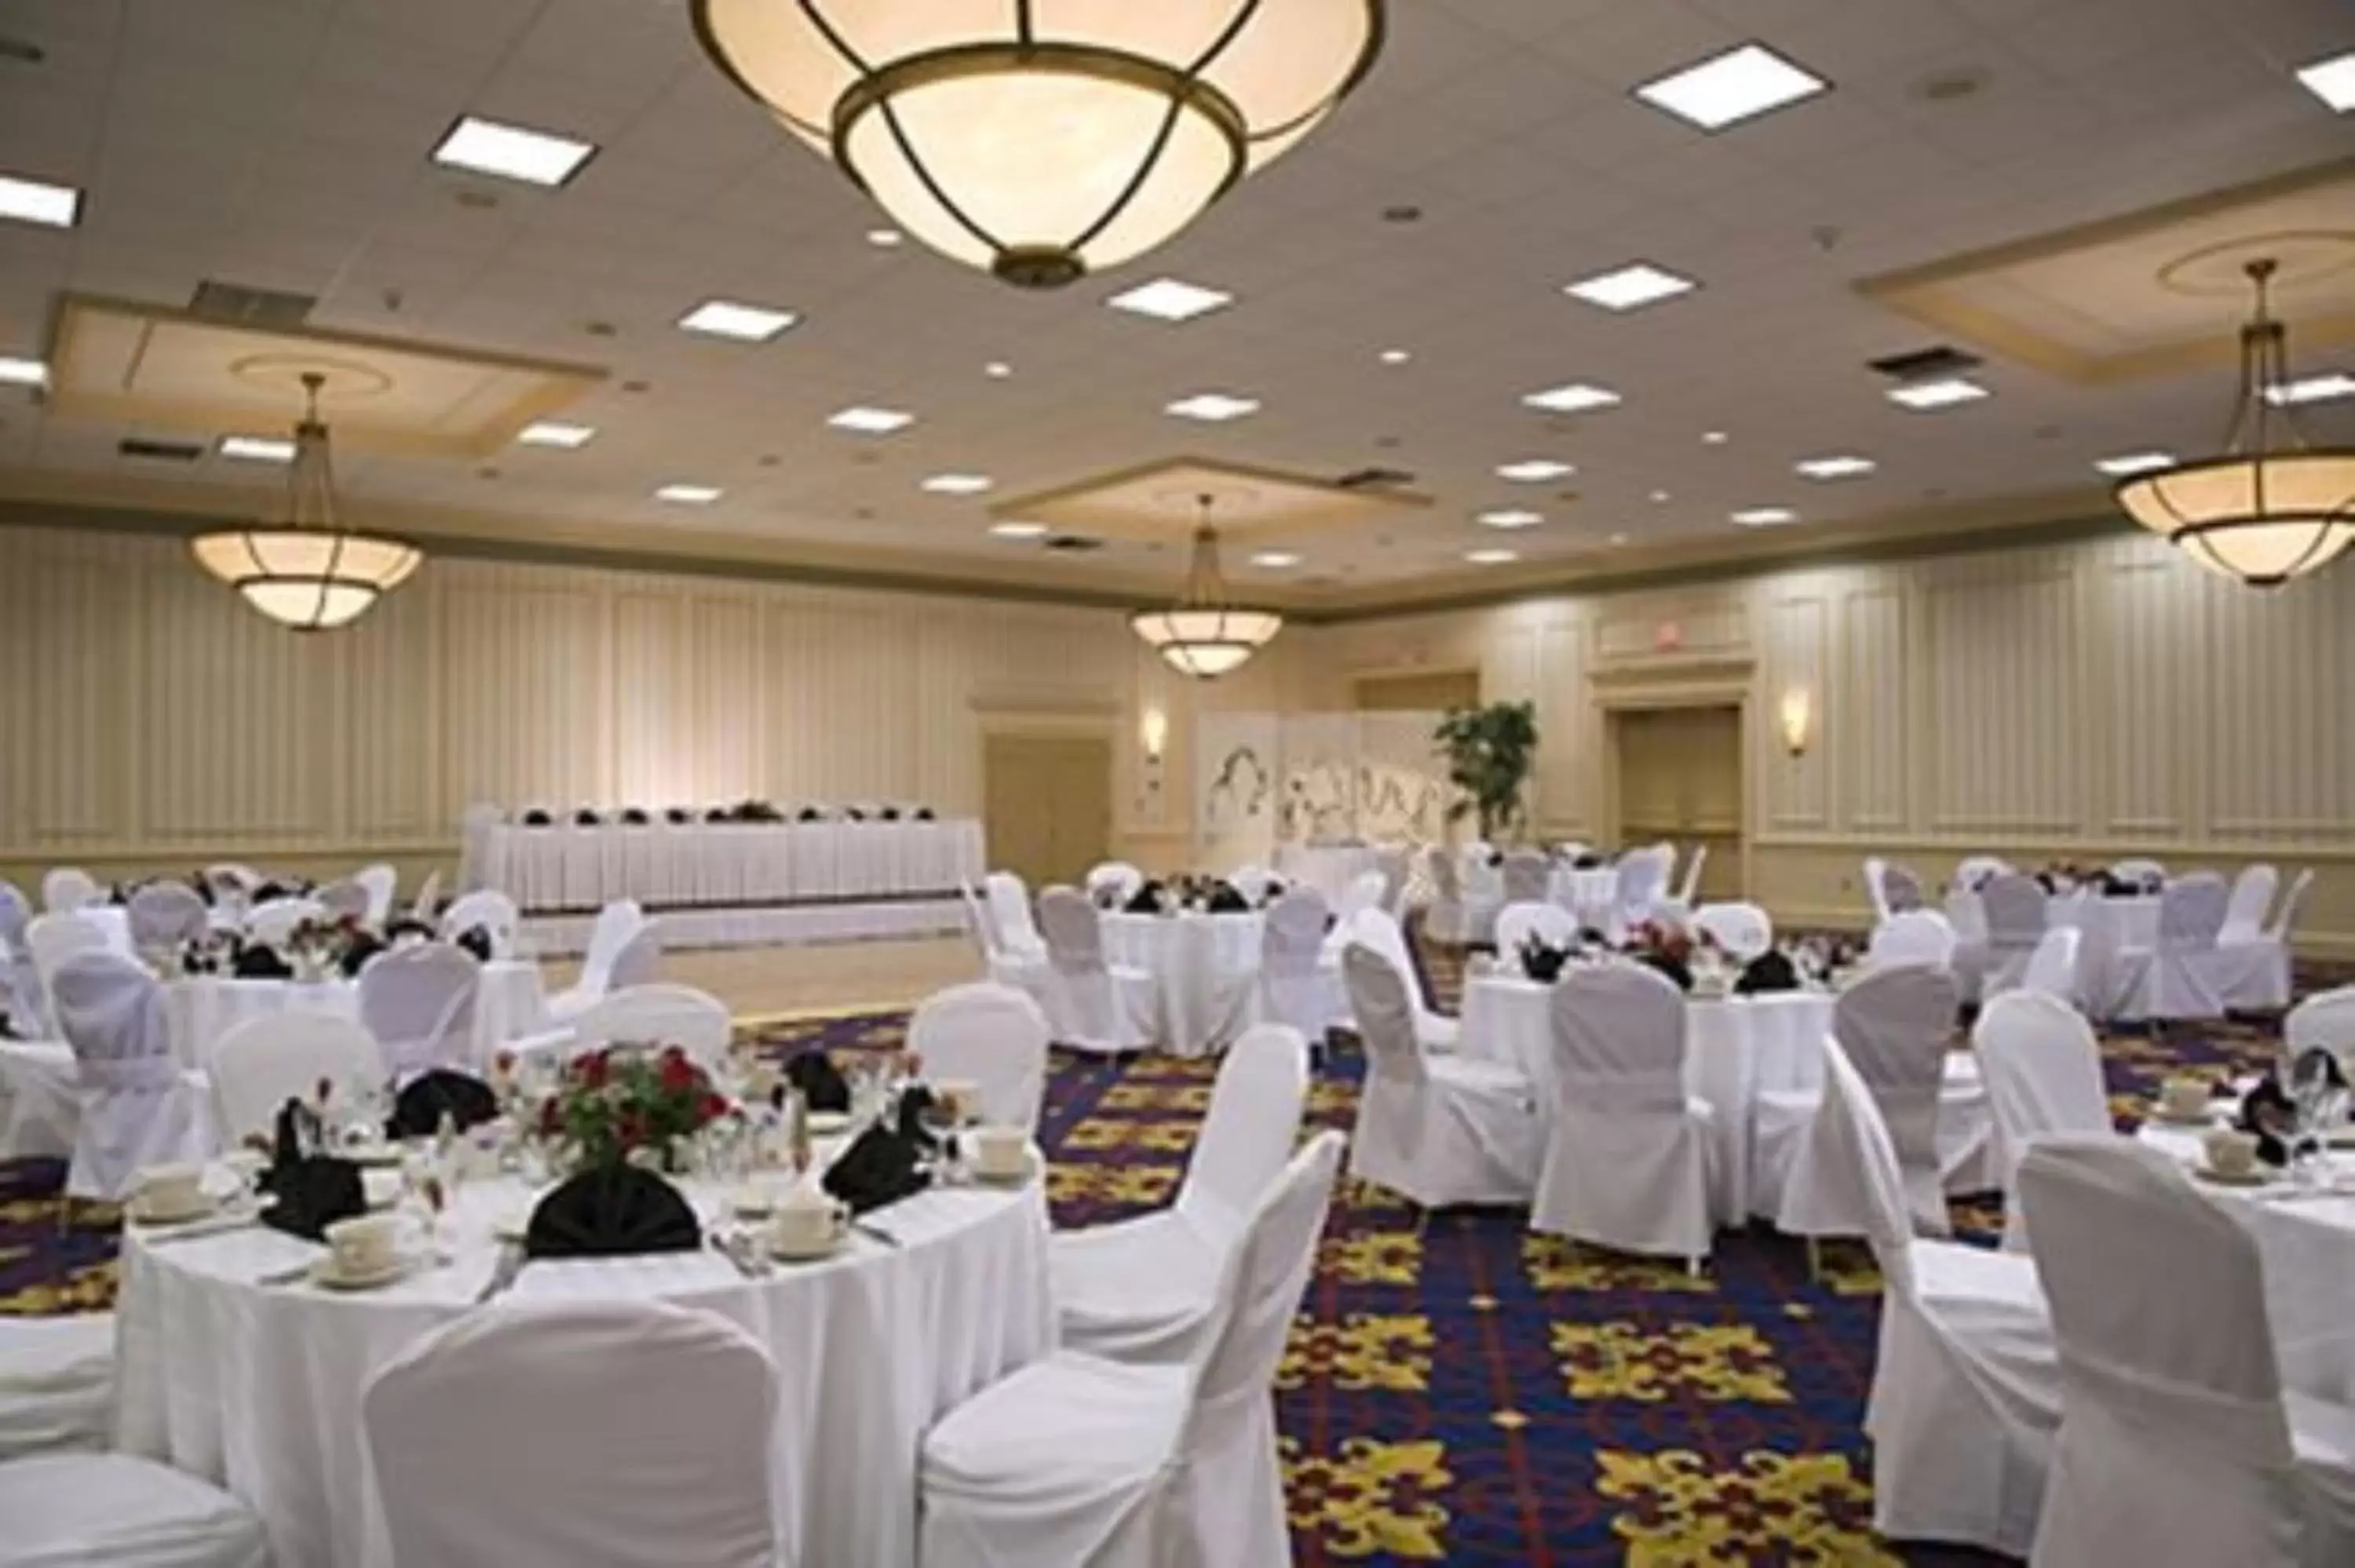 Banquet/Function facilities, Banquet Facilities in Boxboro Regency